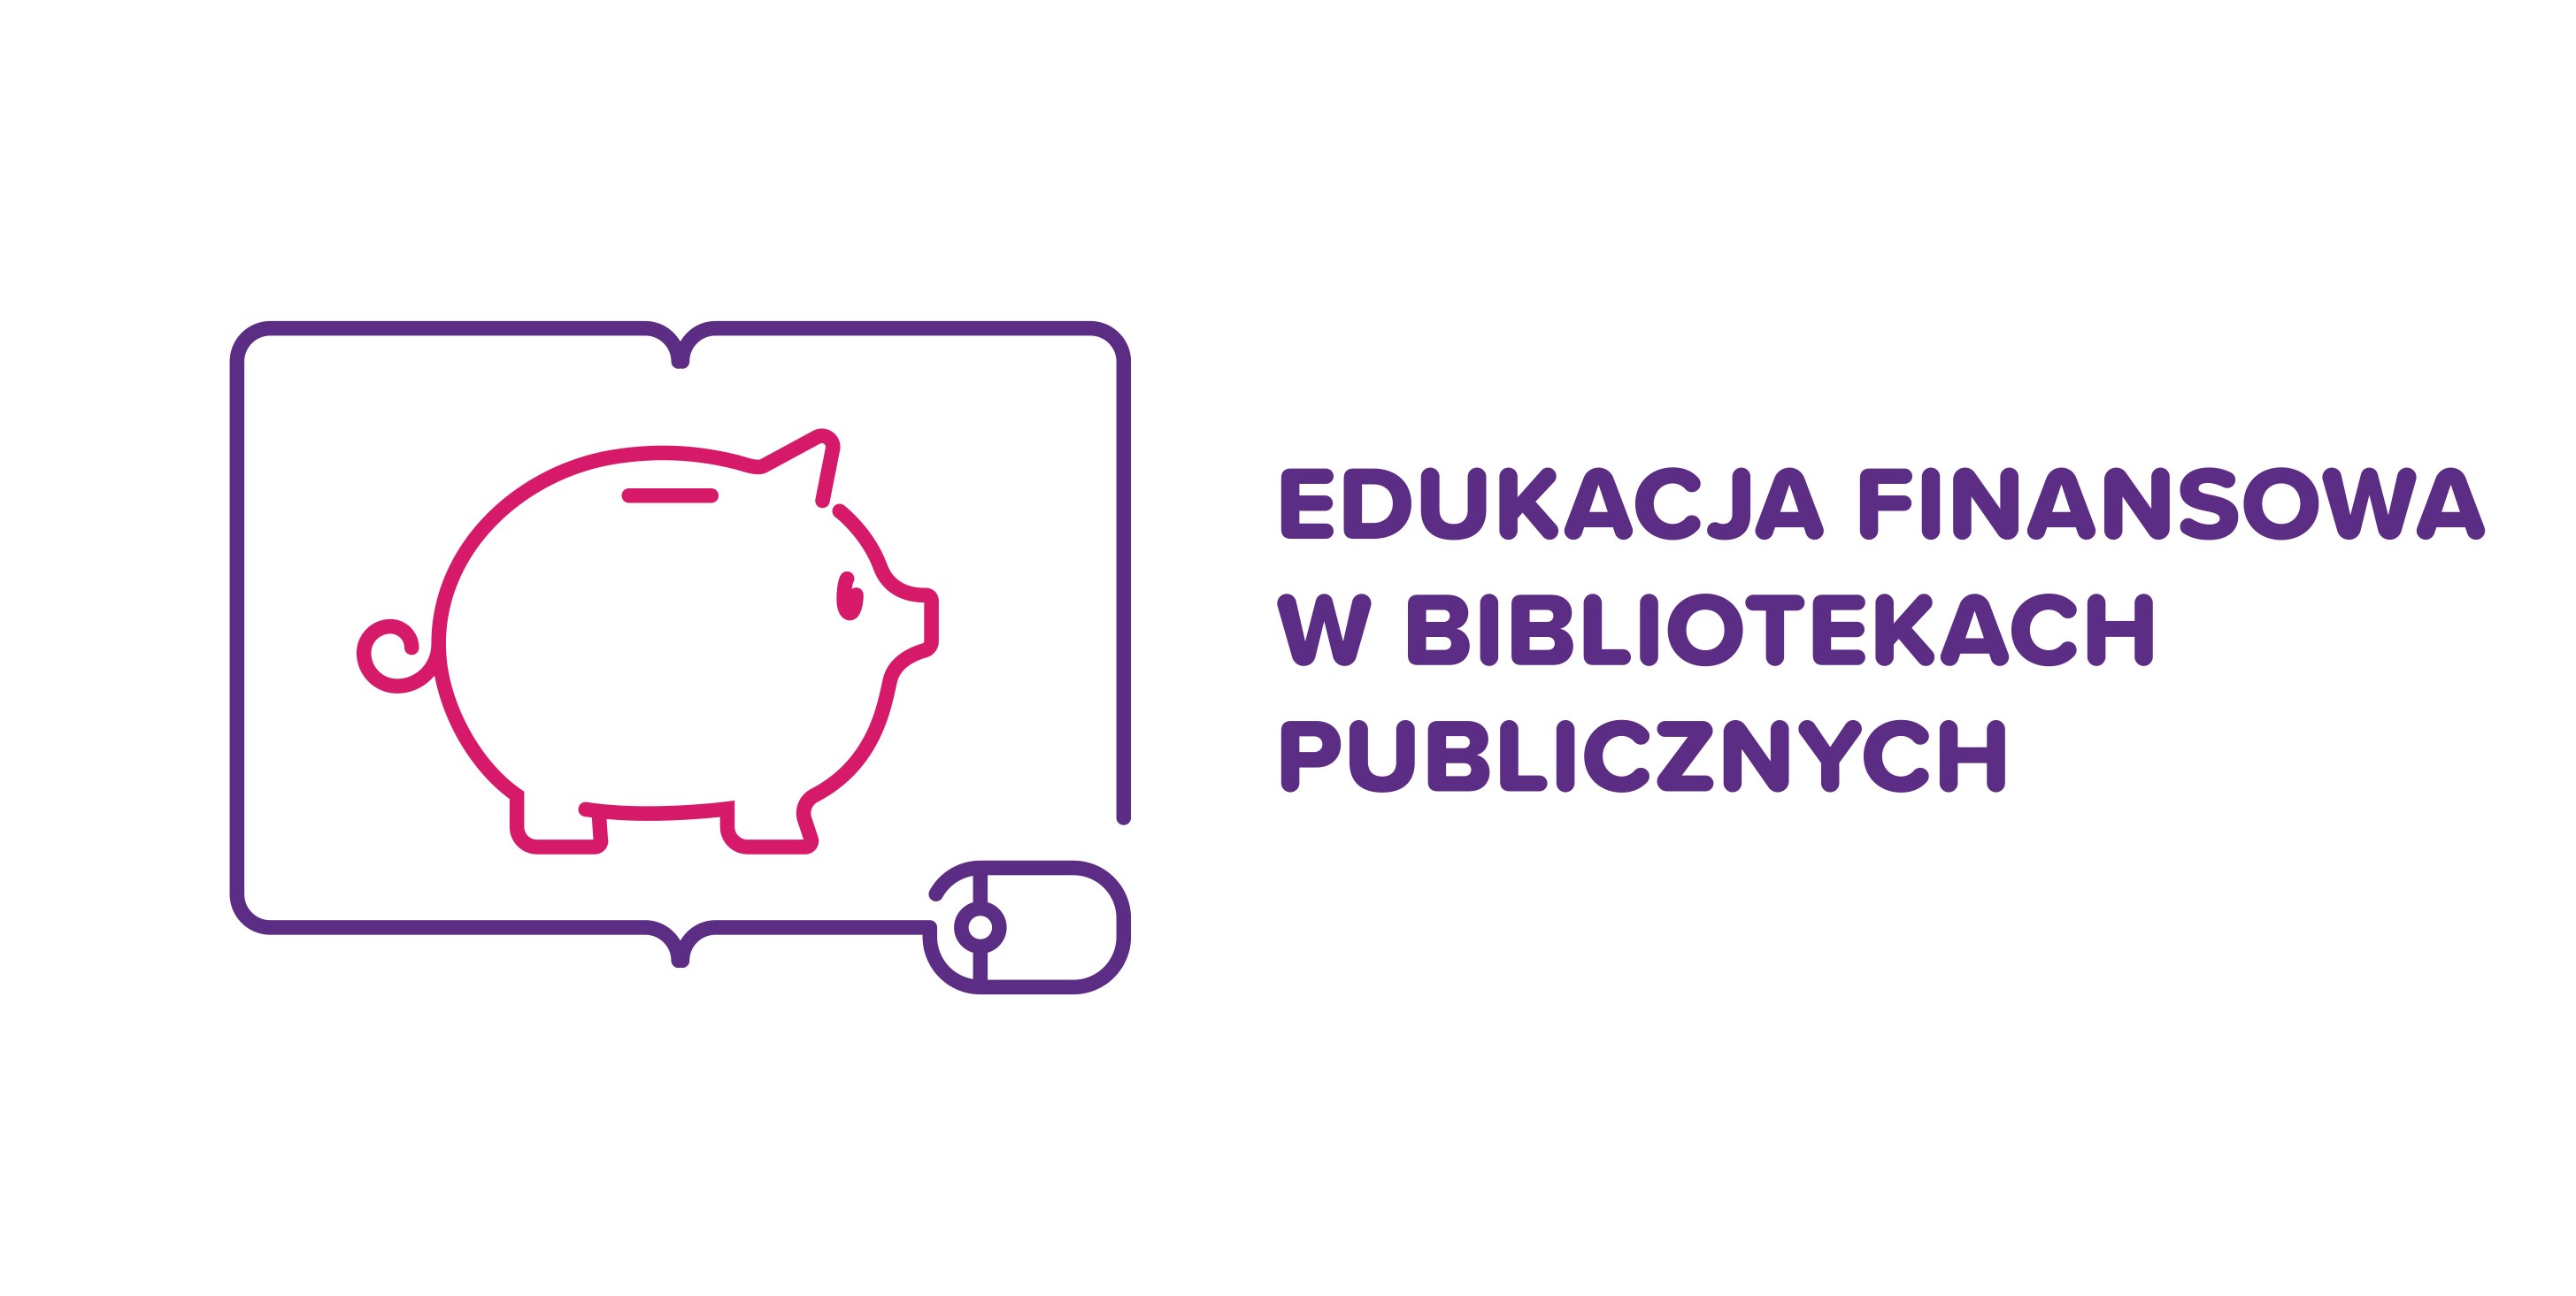 Edukacja finansowa w bibliotekach publicznych - zapraszamy na webinarium